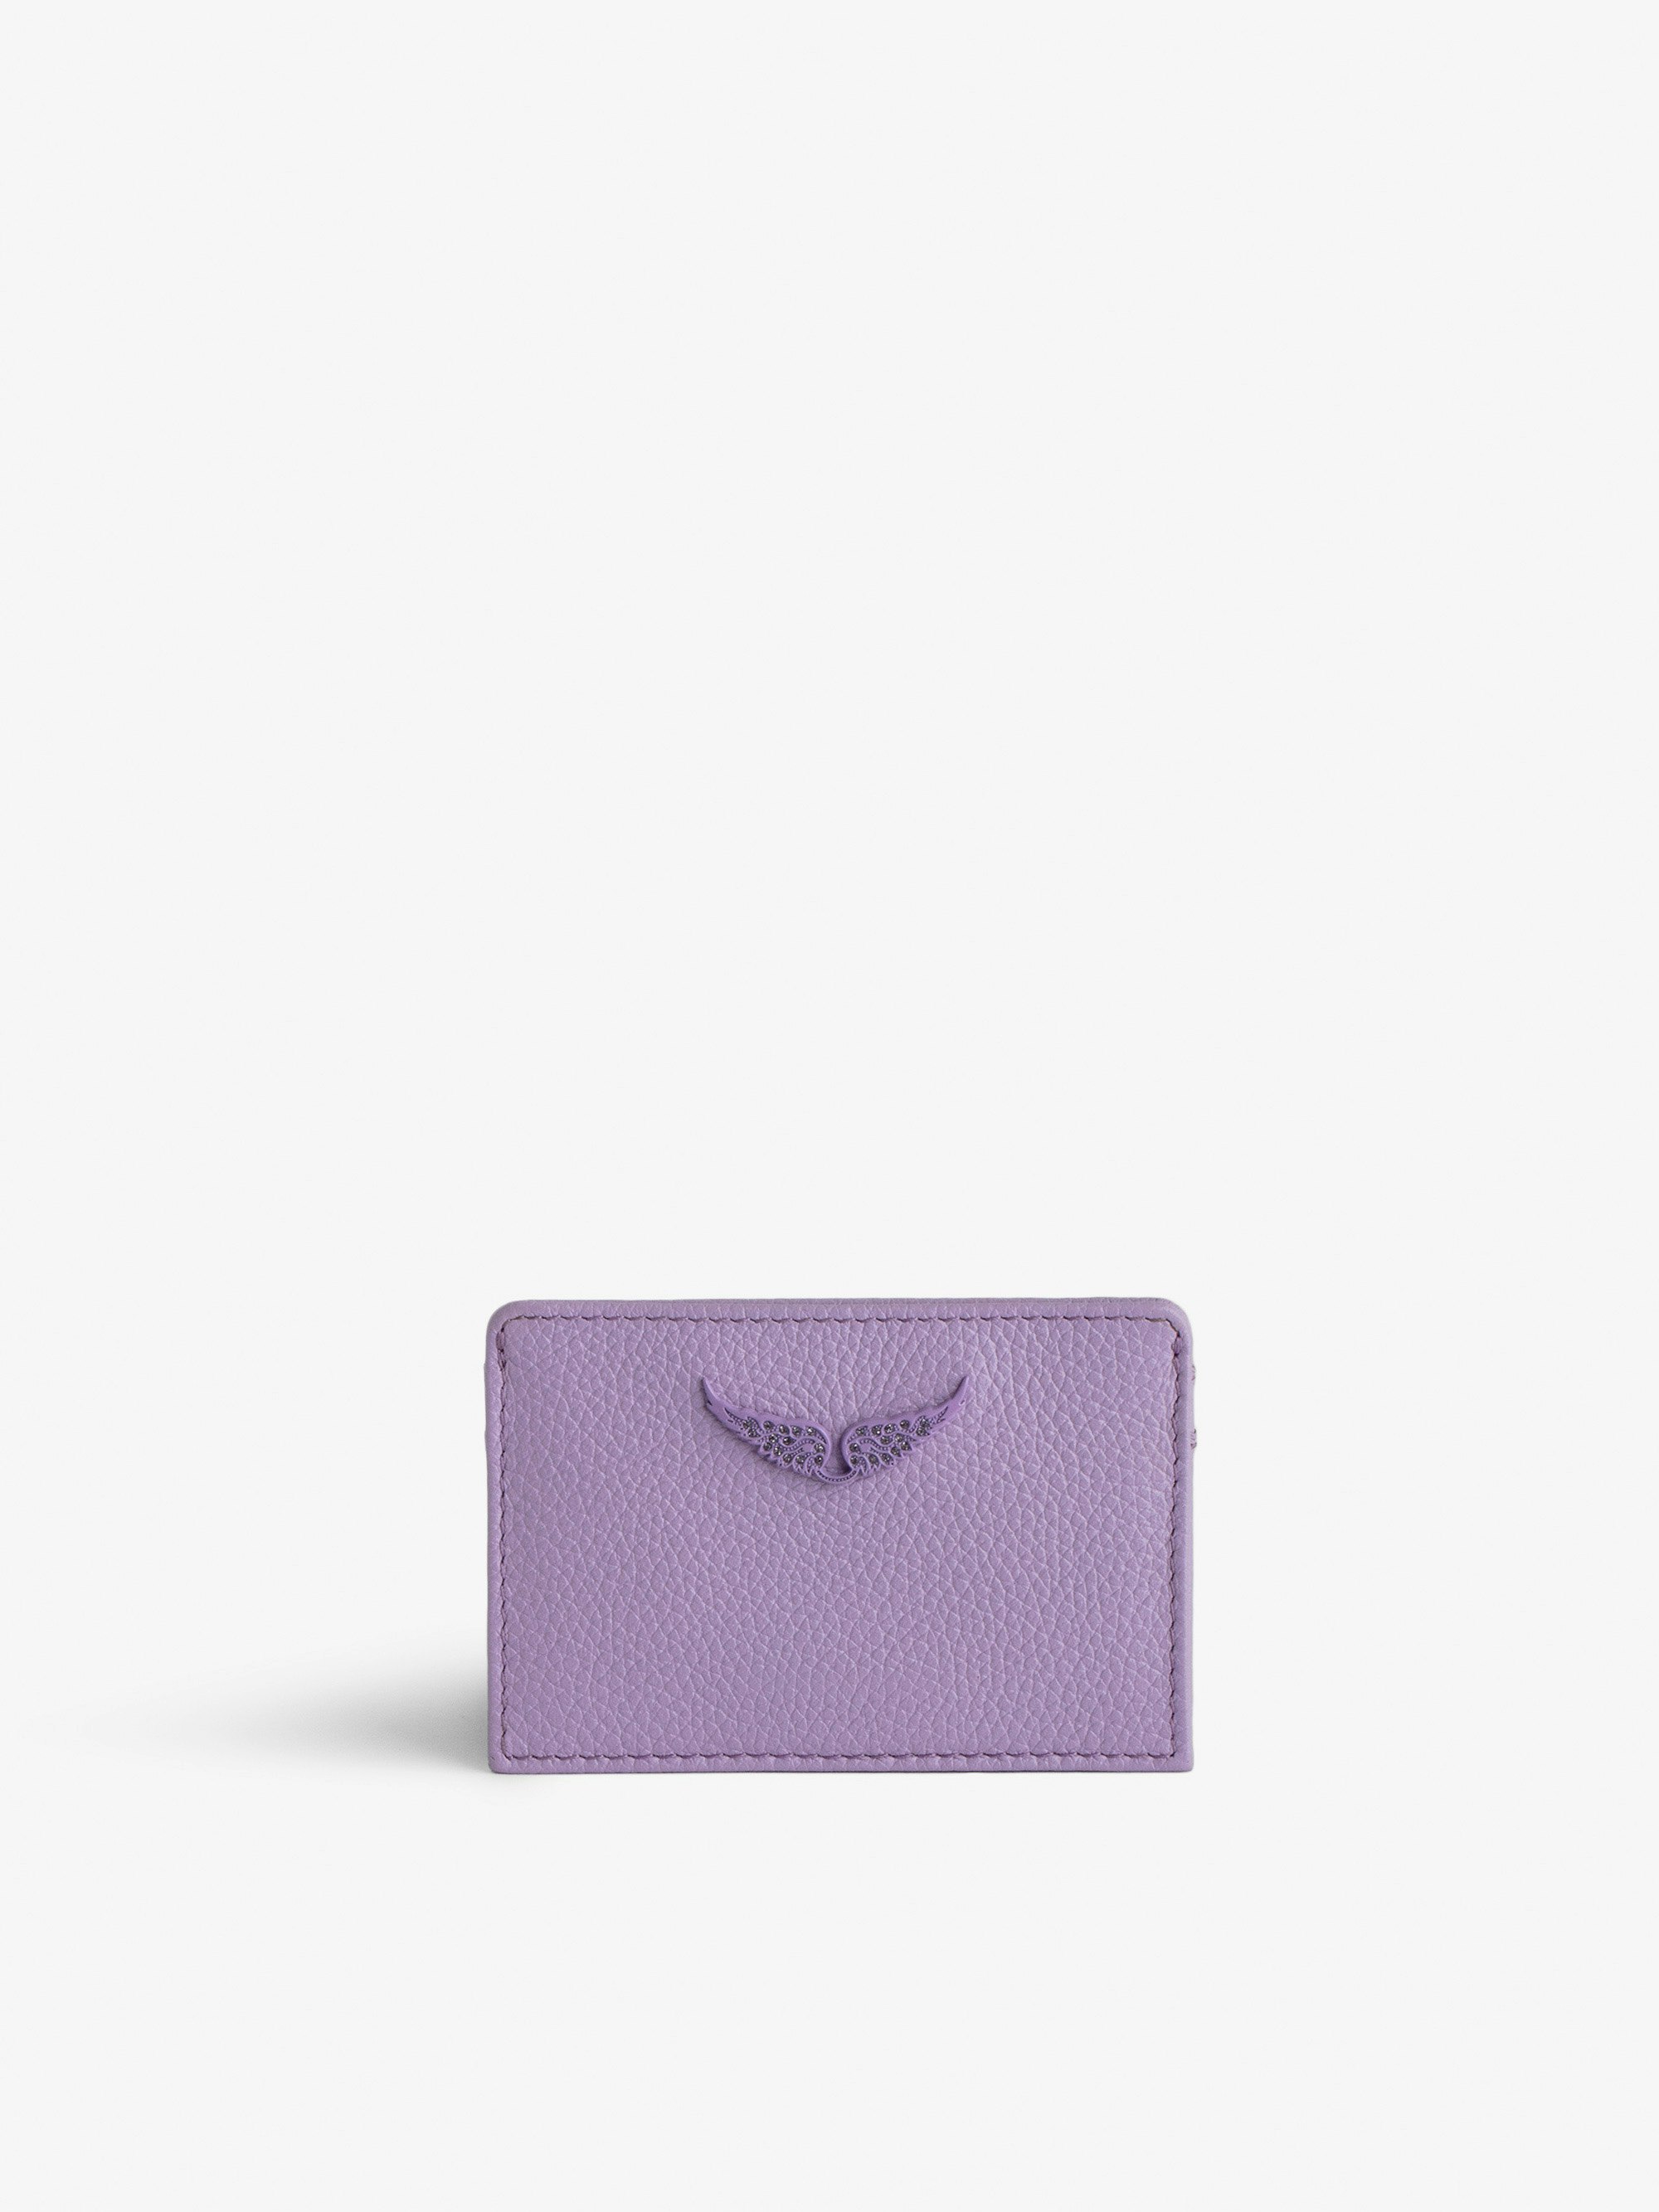 Kartenetui ZV Pass - Violettes Kartenetui aus genarbtem Leder mit strassverziertem Flügel-Charm.